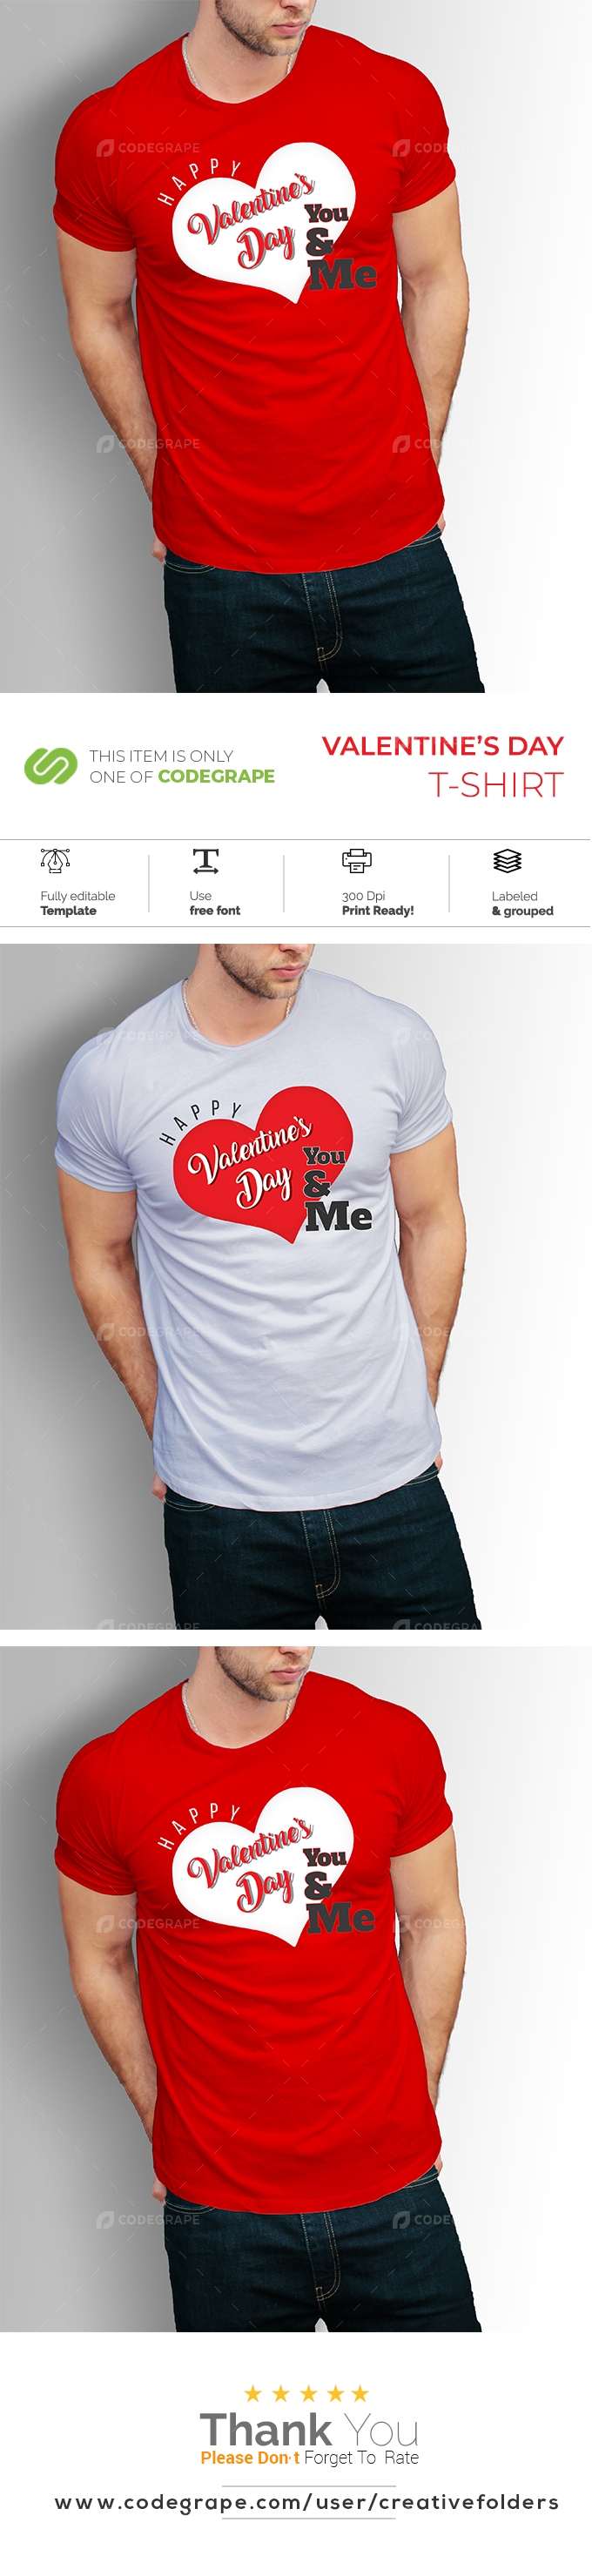 Valentine's Day T-Shirt